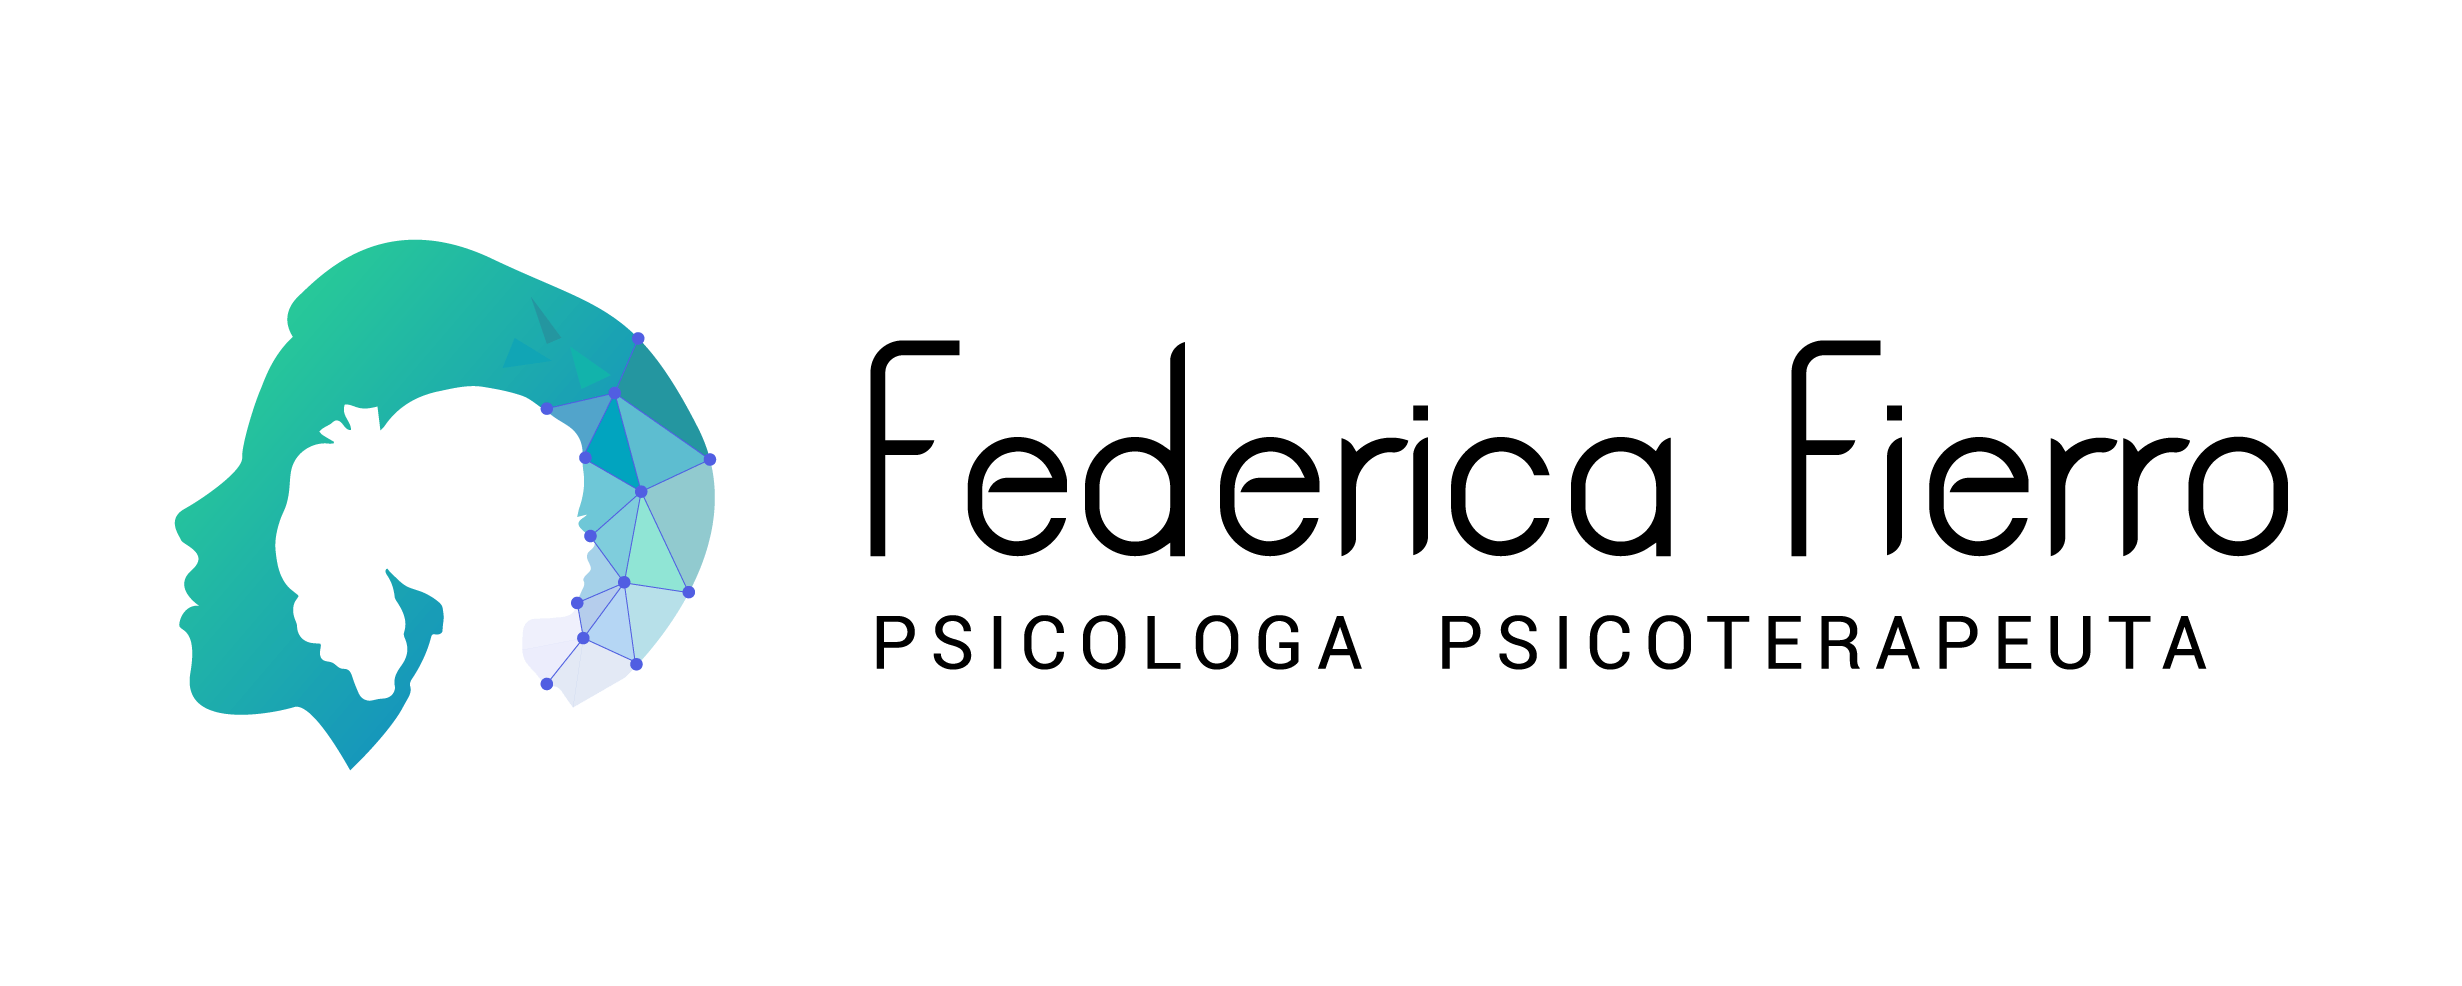 Psicologa Federica Fierro